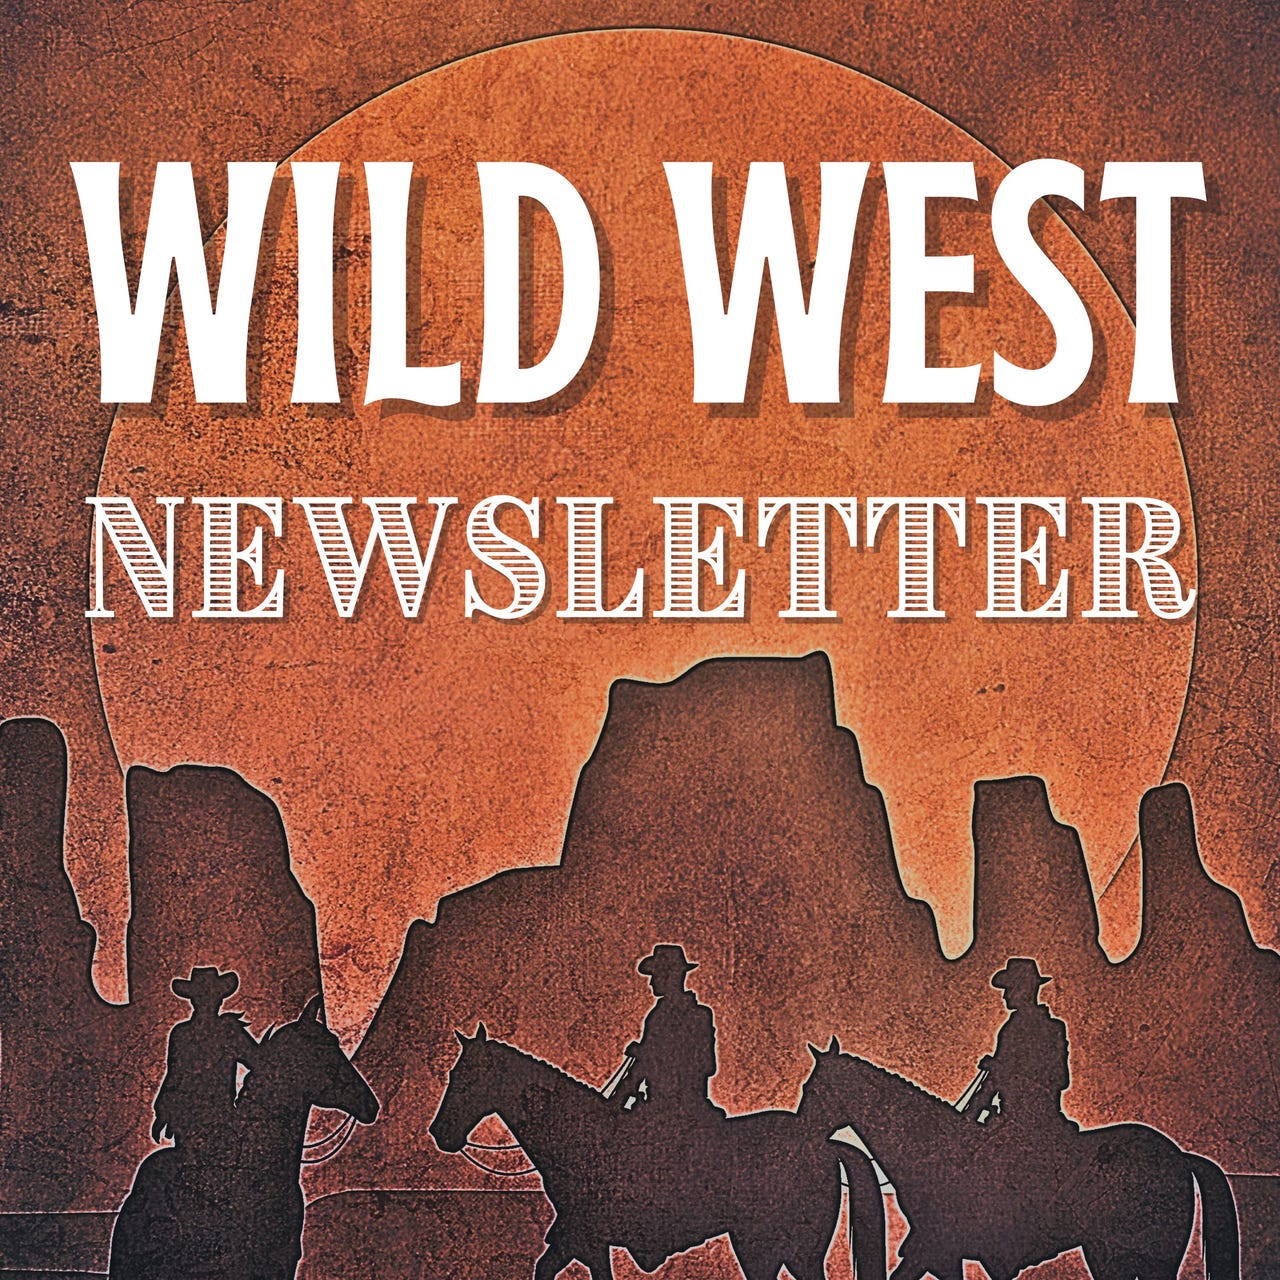 The Wild West Newsletter